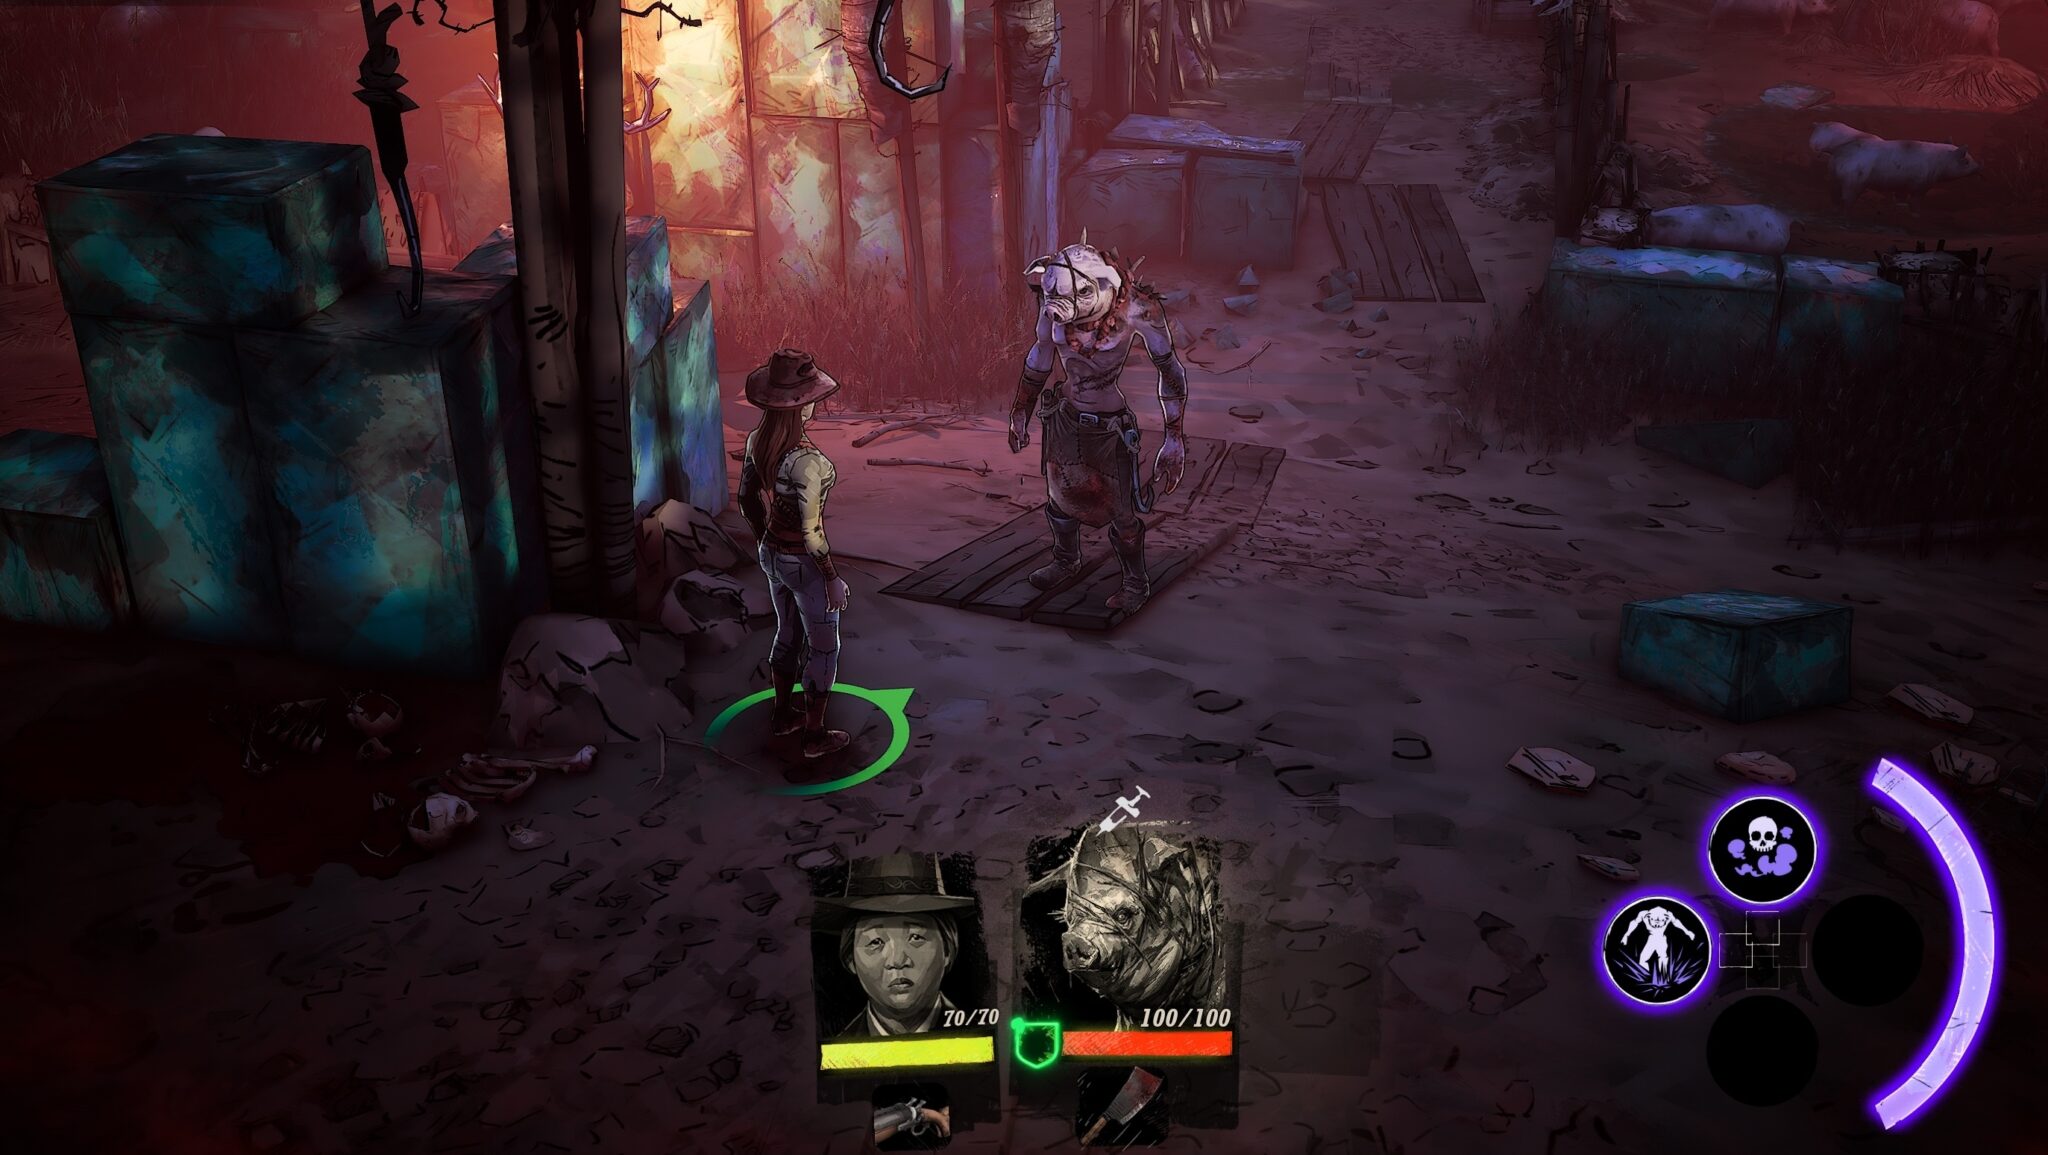 En el transcurso del juego te enfrentas a cinco personajes completamente diferentes, uno tras otro. El maldito Pigman quiere reconstruir su vida como humano.